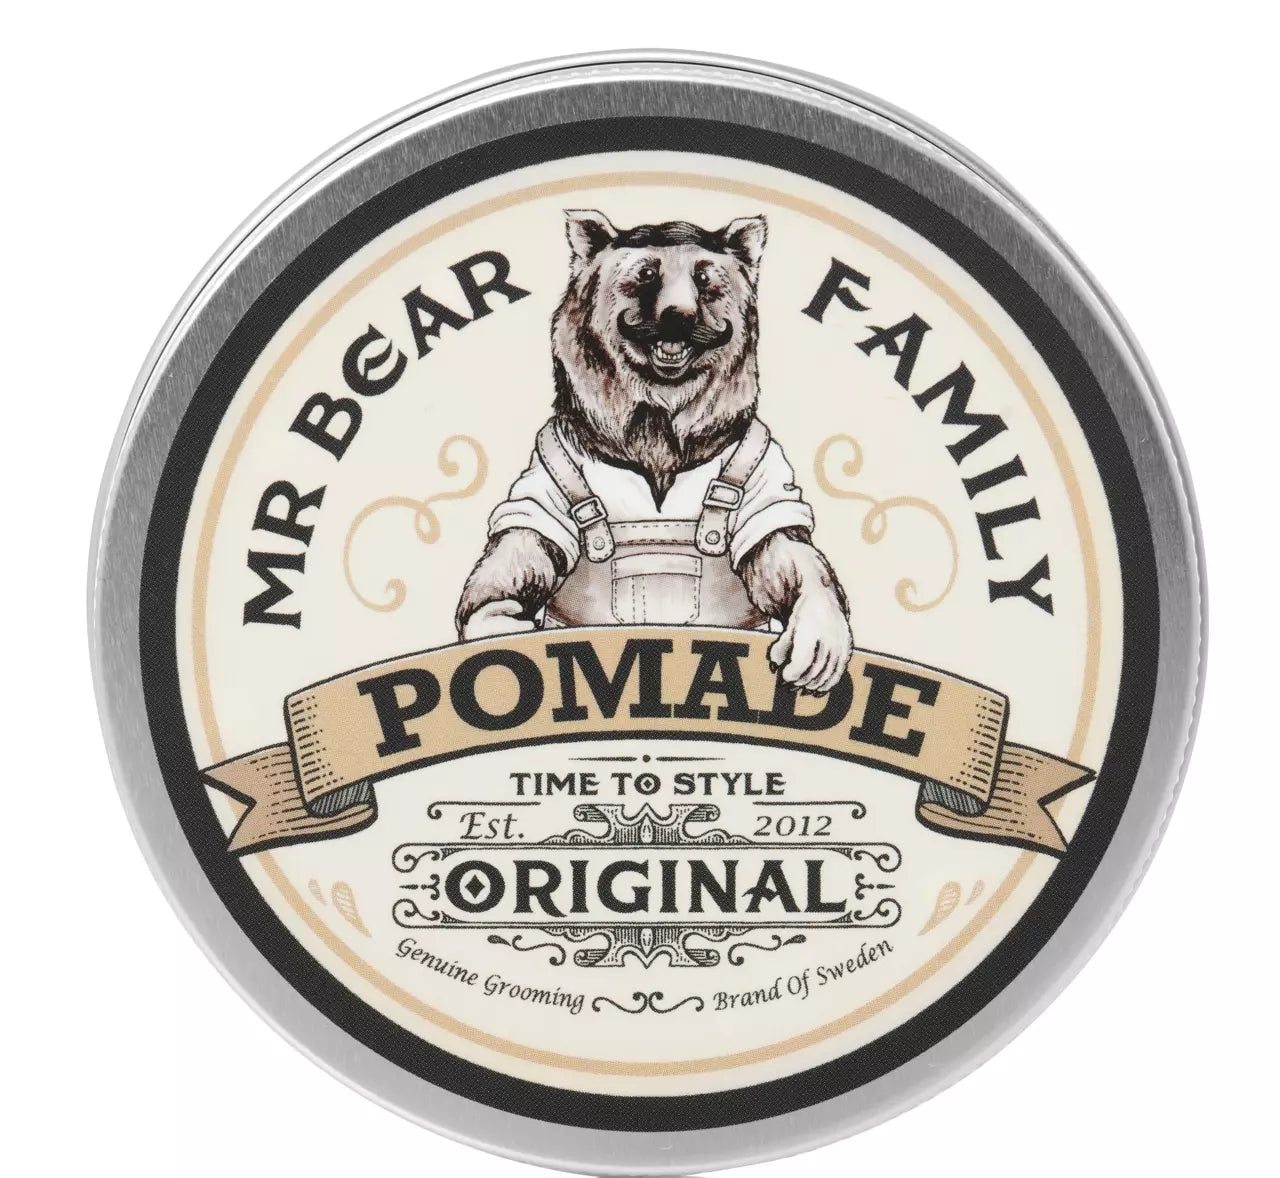 Mr Bear Family Pomade